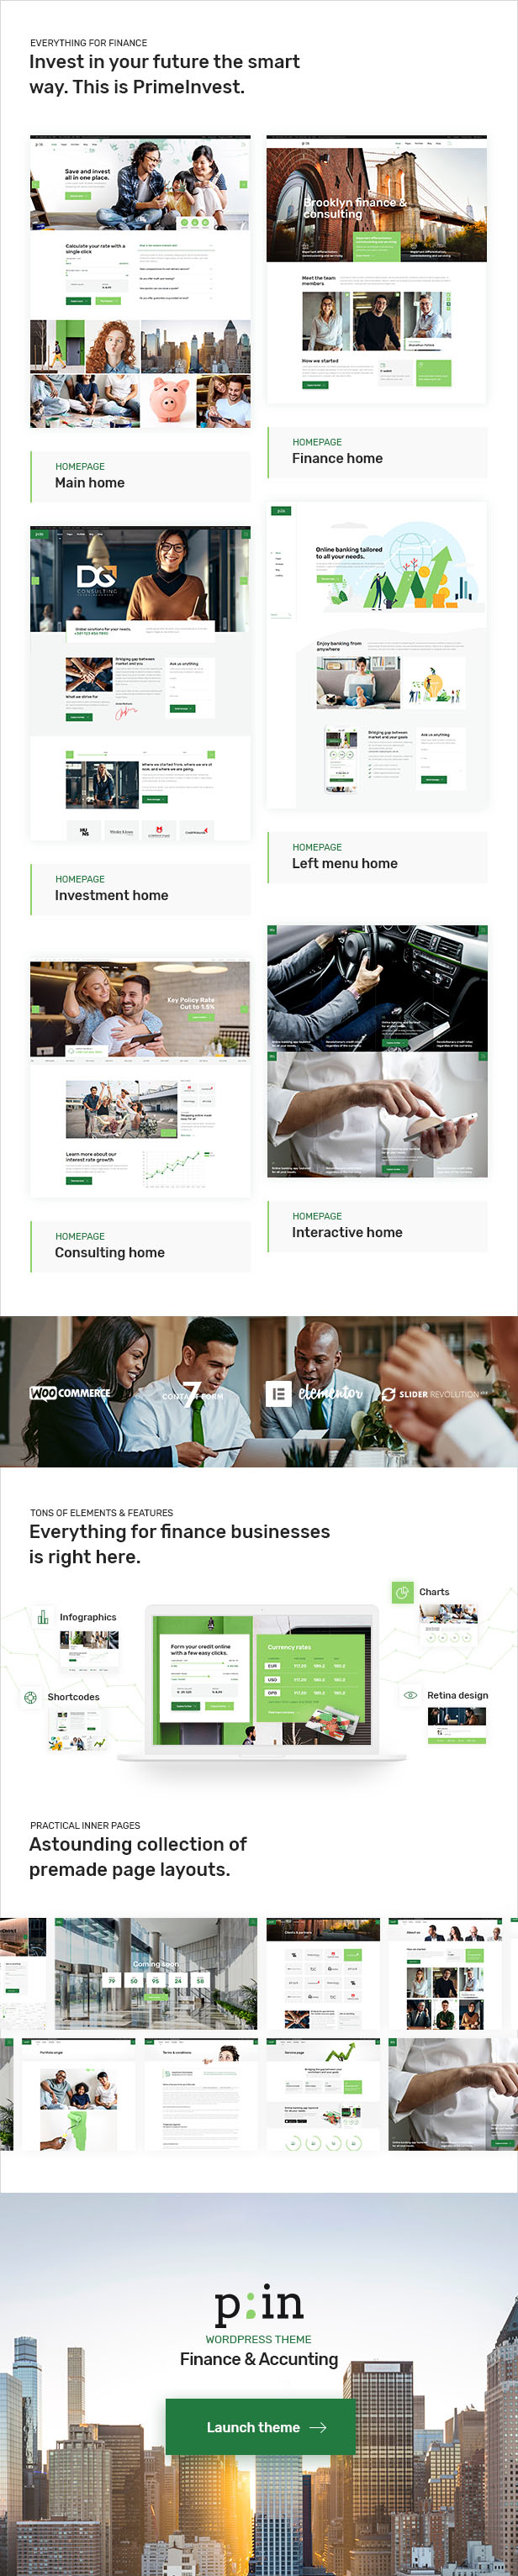 PrimeInvest - Finance WordPress Theme - 1